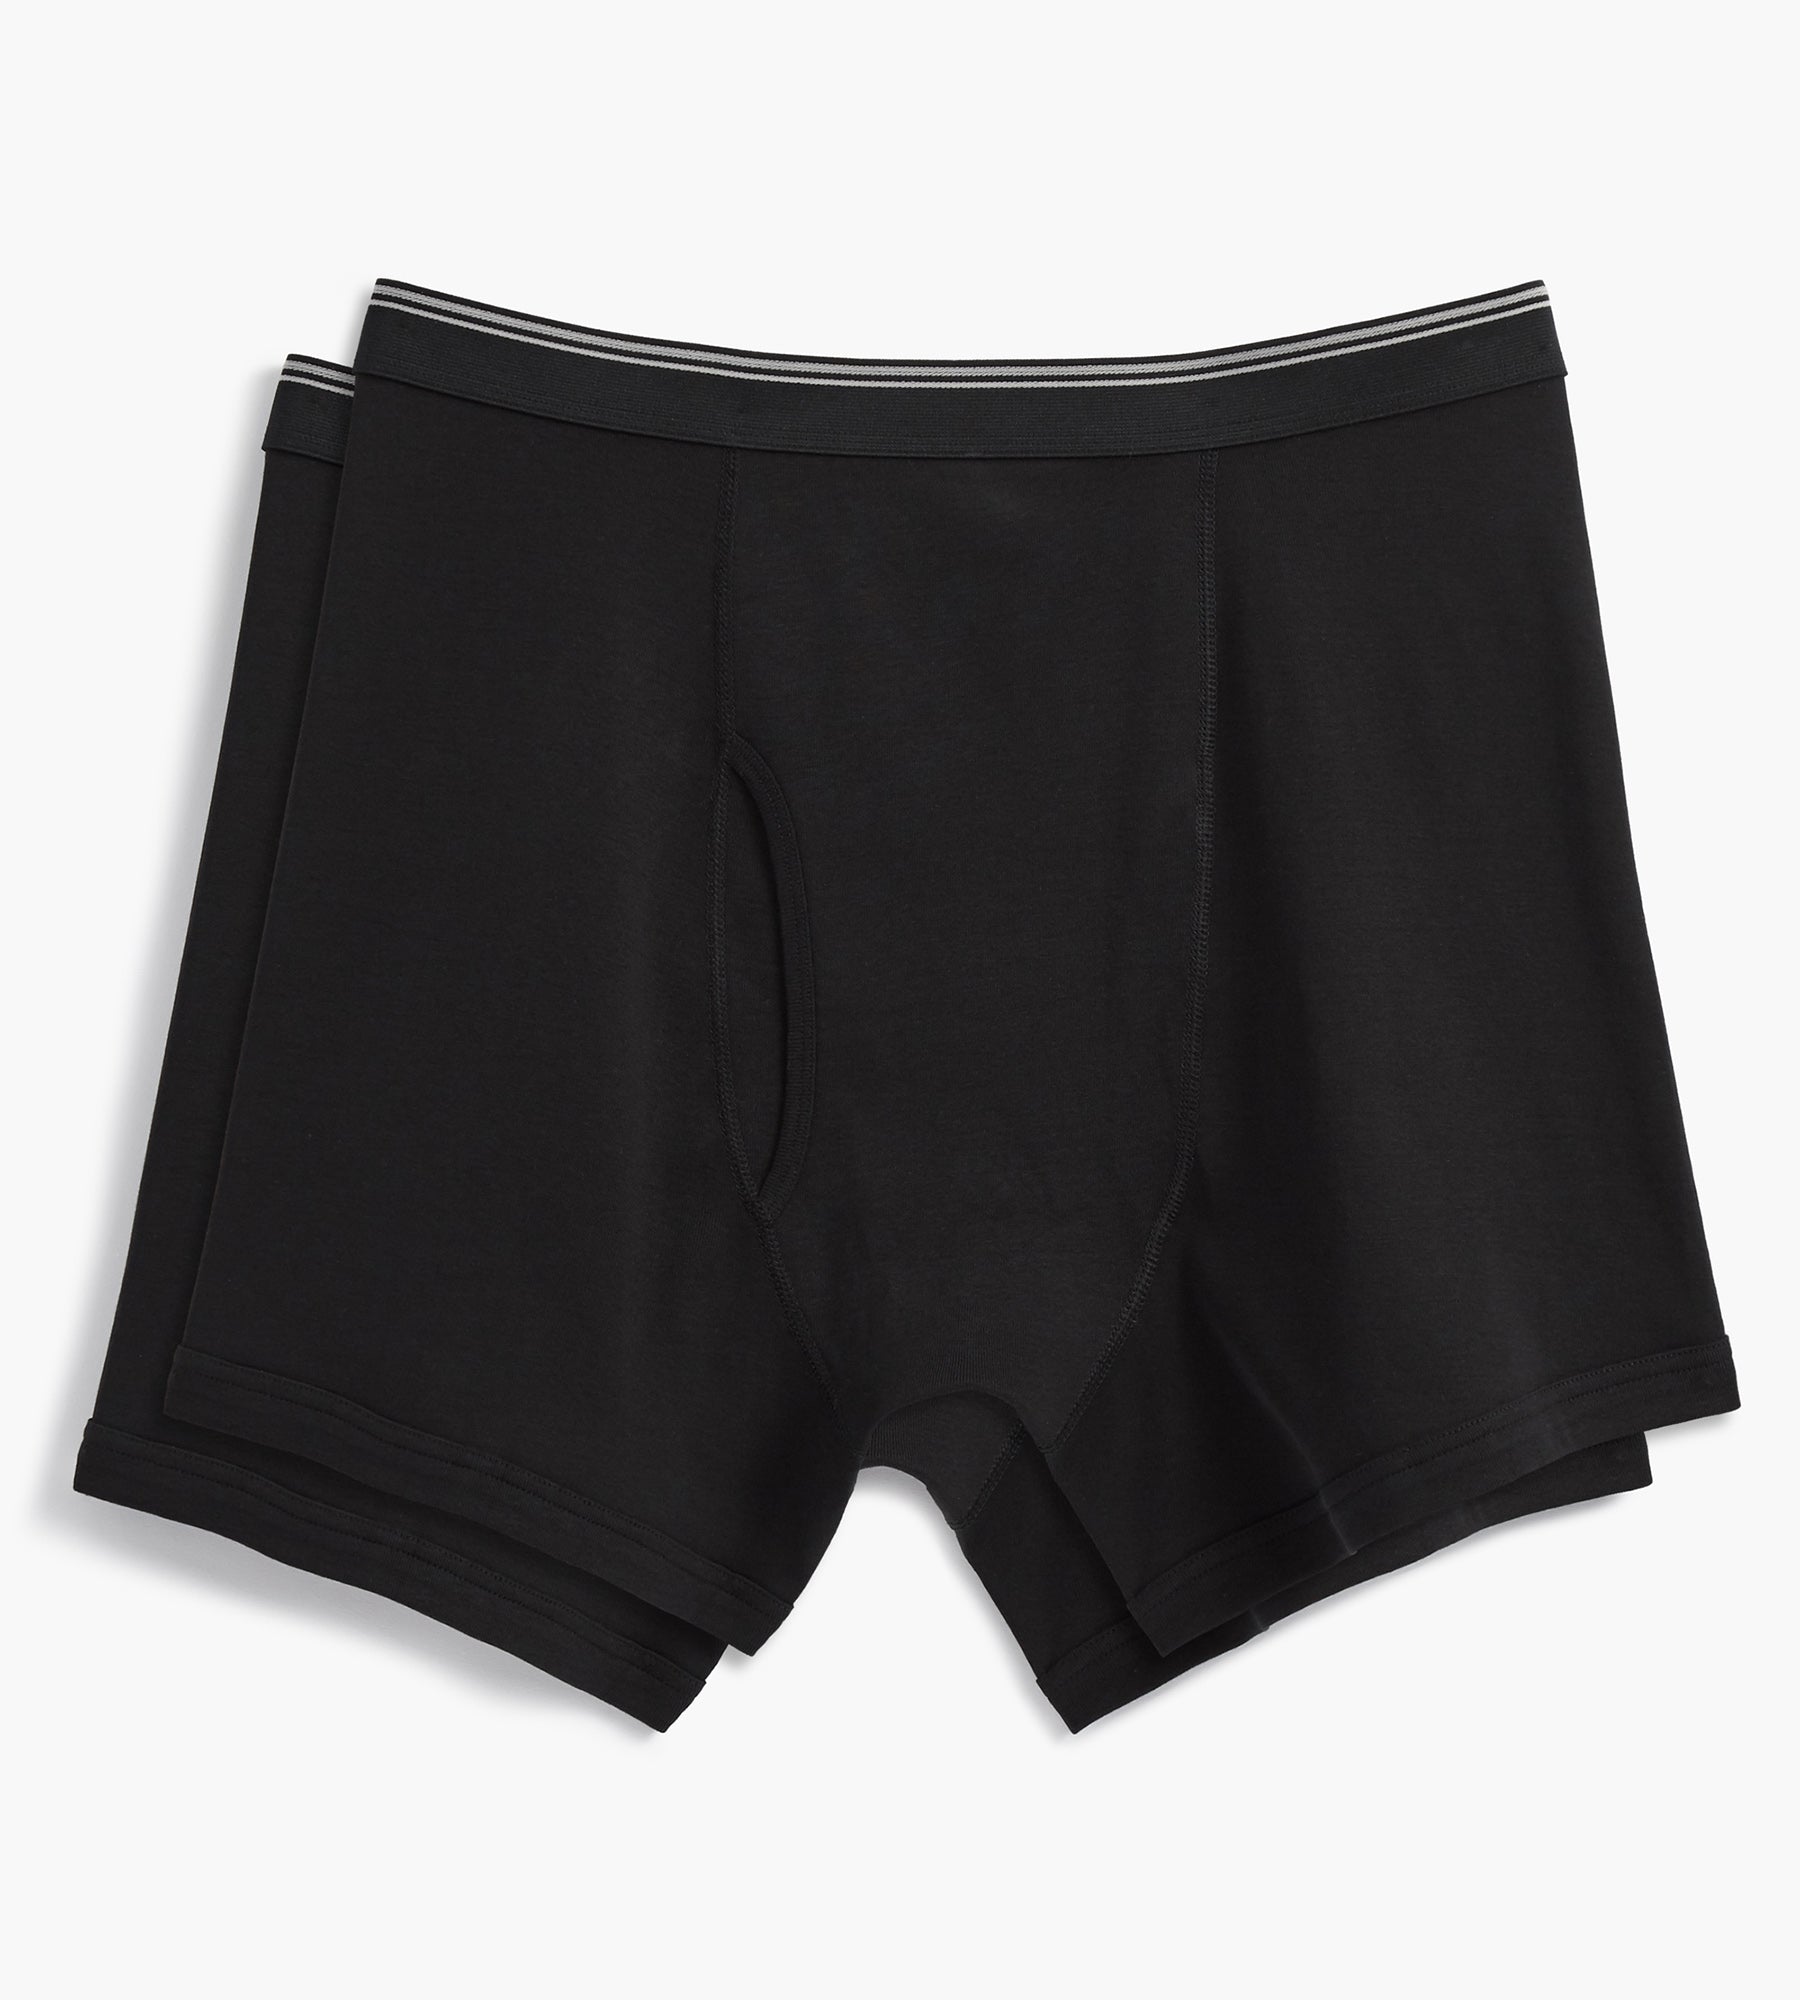 New Balance NB Dry Heather Black 6 Boxer Brief Underwear Men's NWT